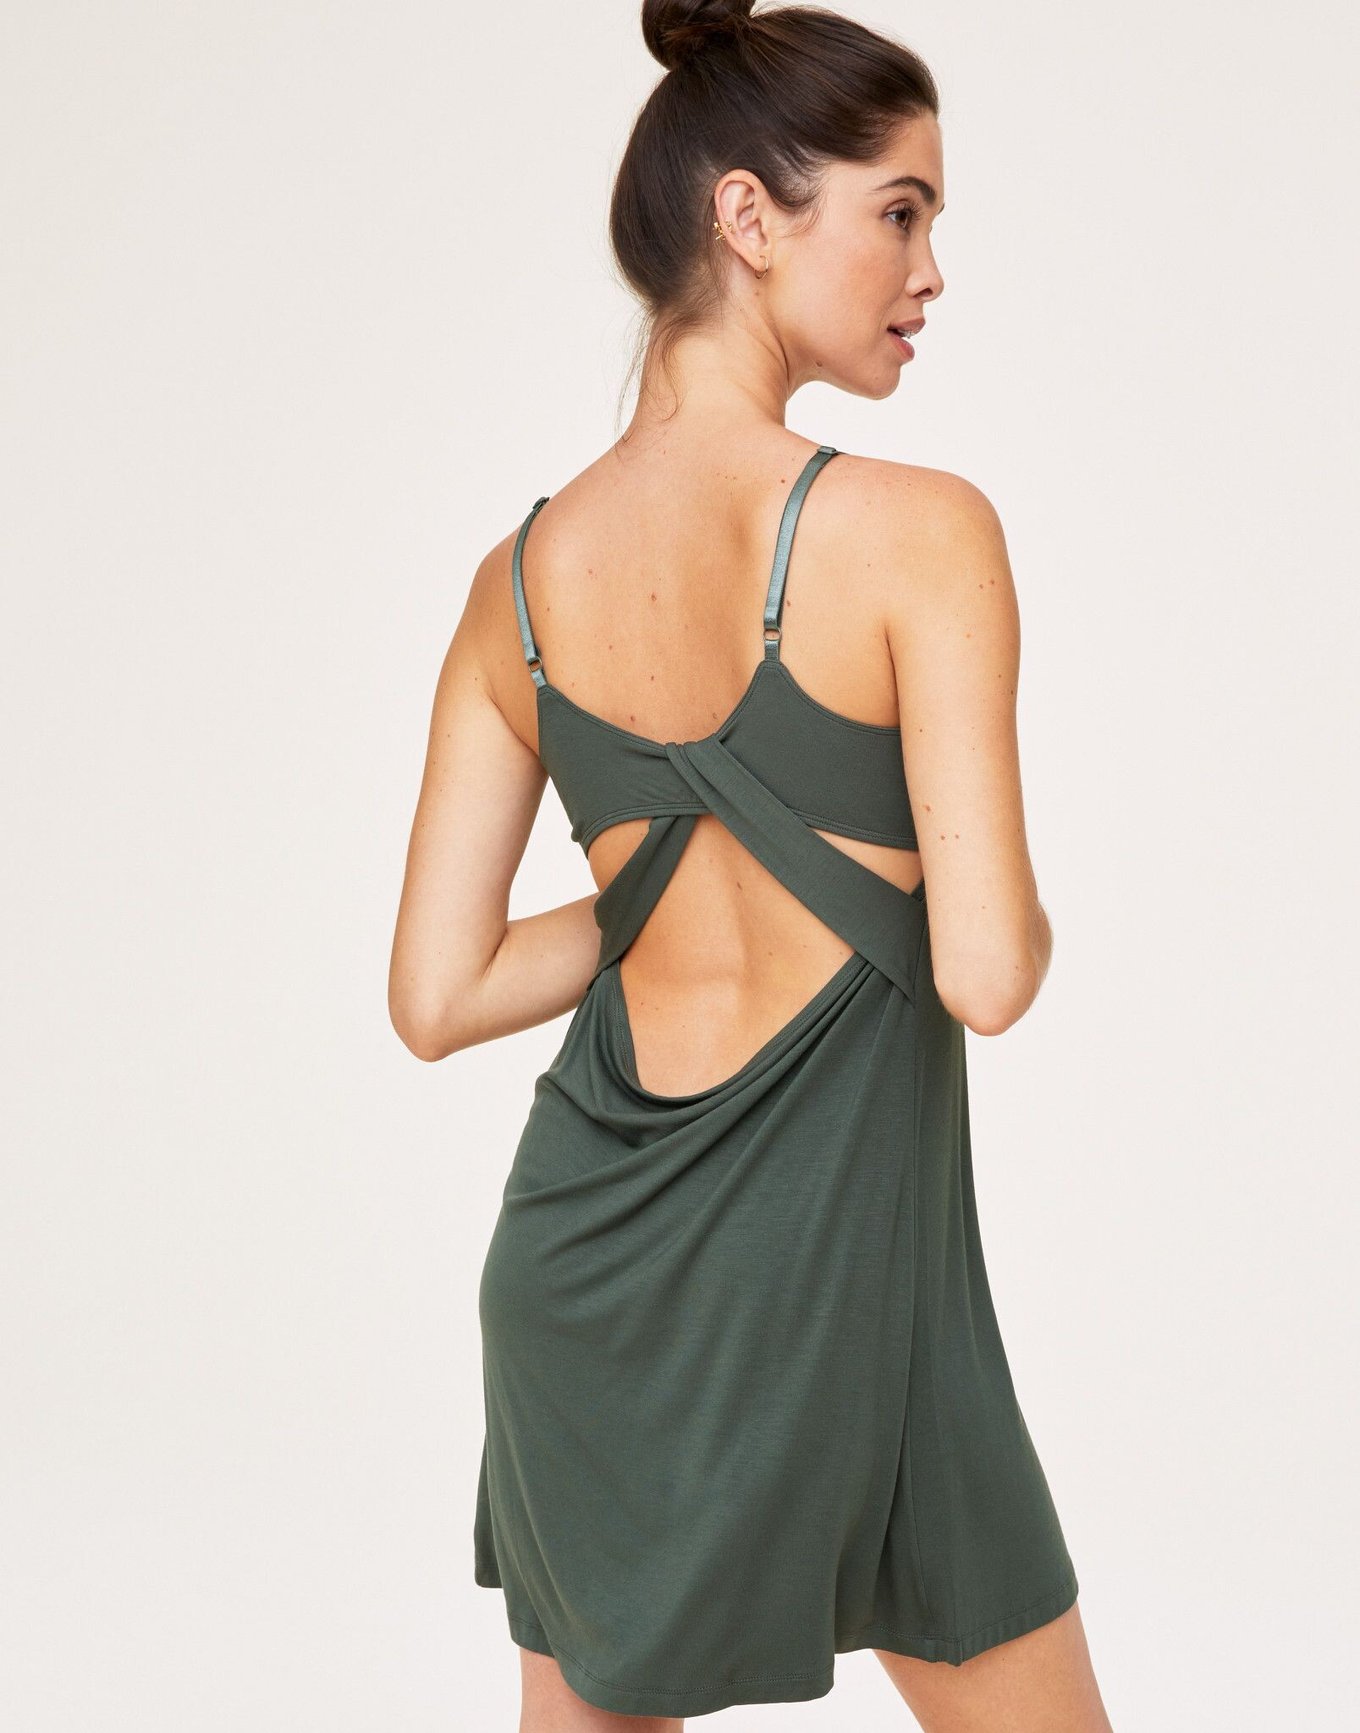 Nightgown with Built in Bra Cotton Slip for Women Under Dress Slip